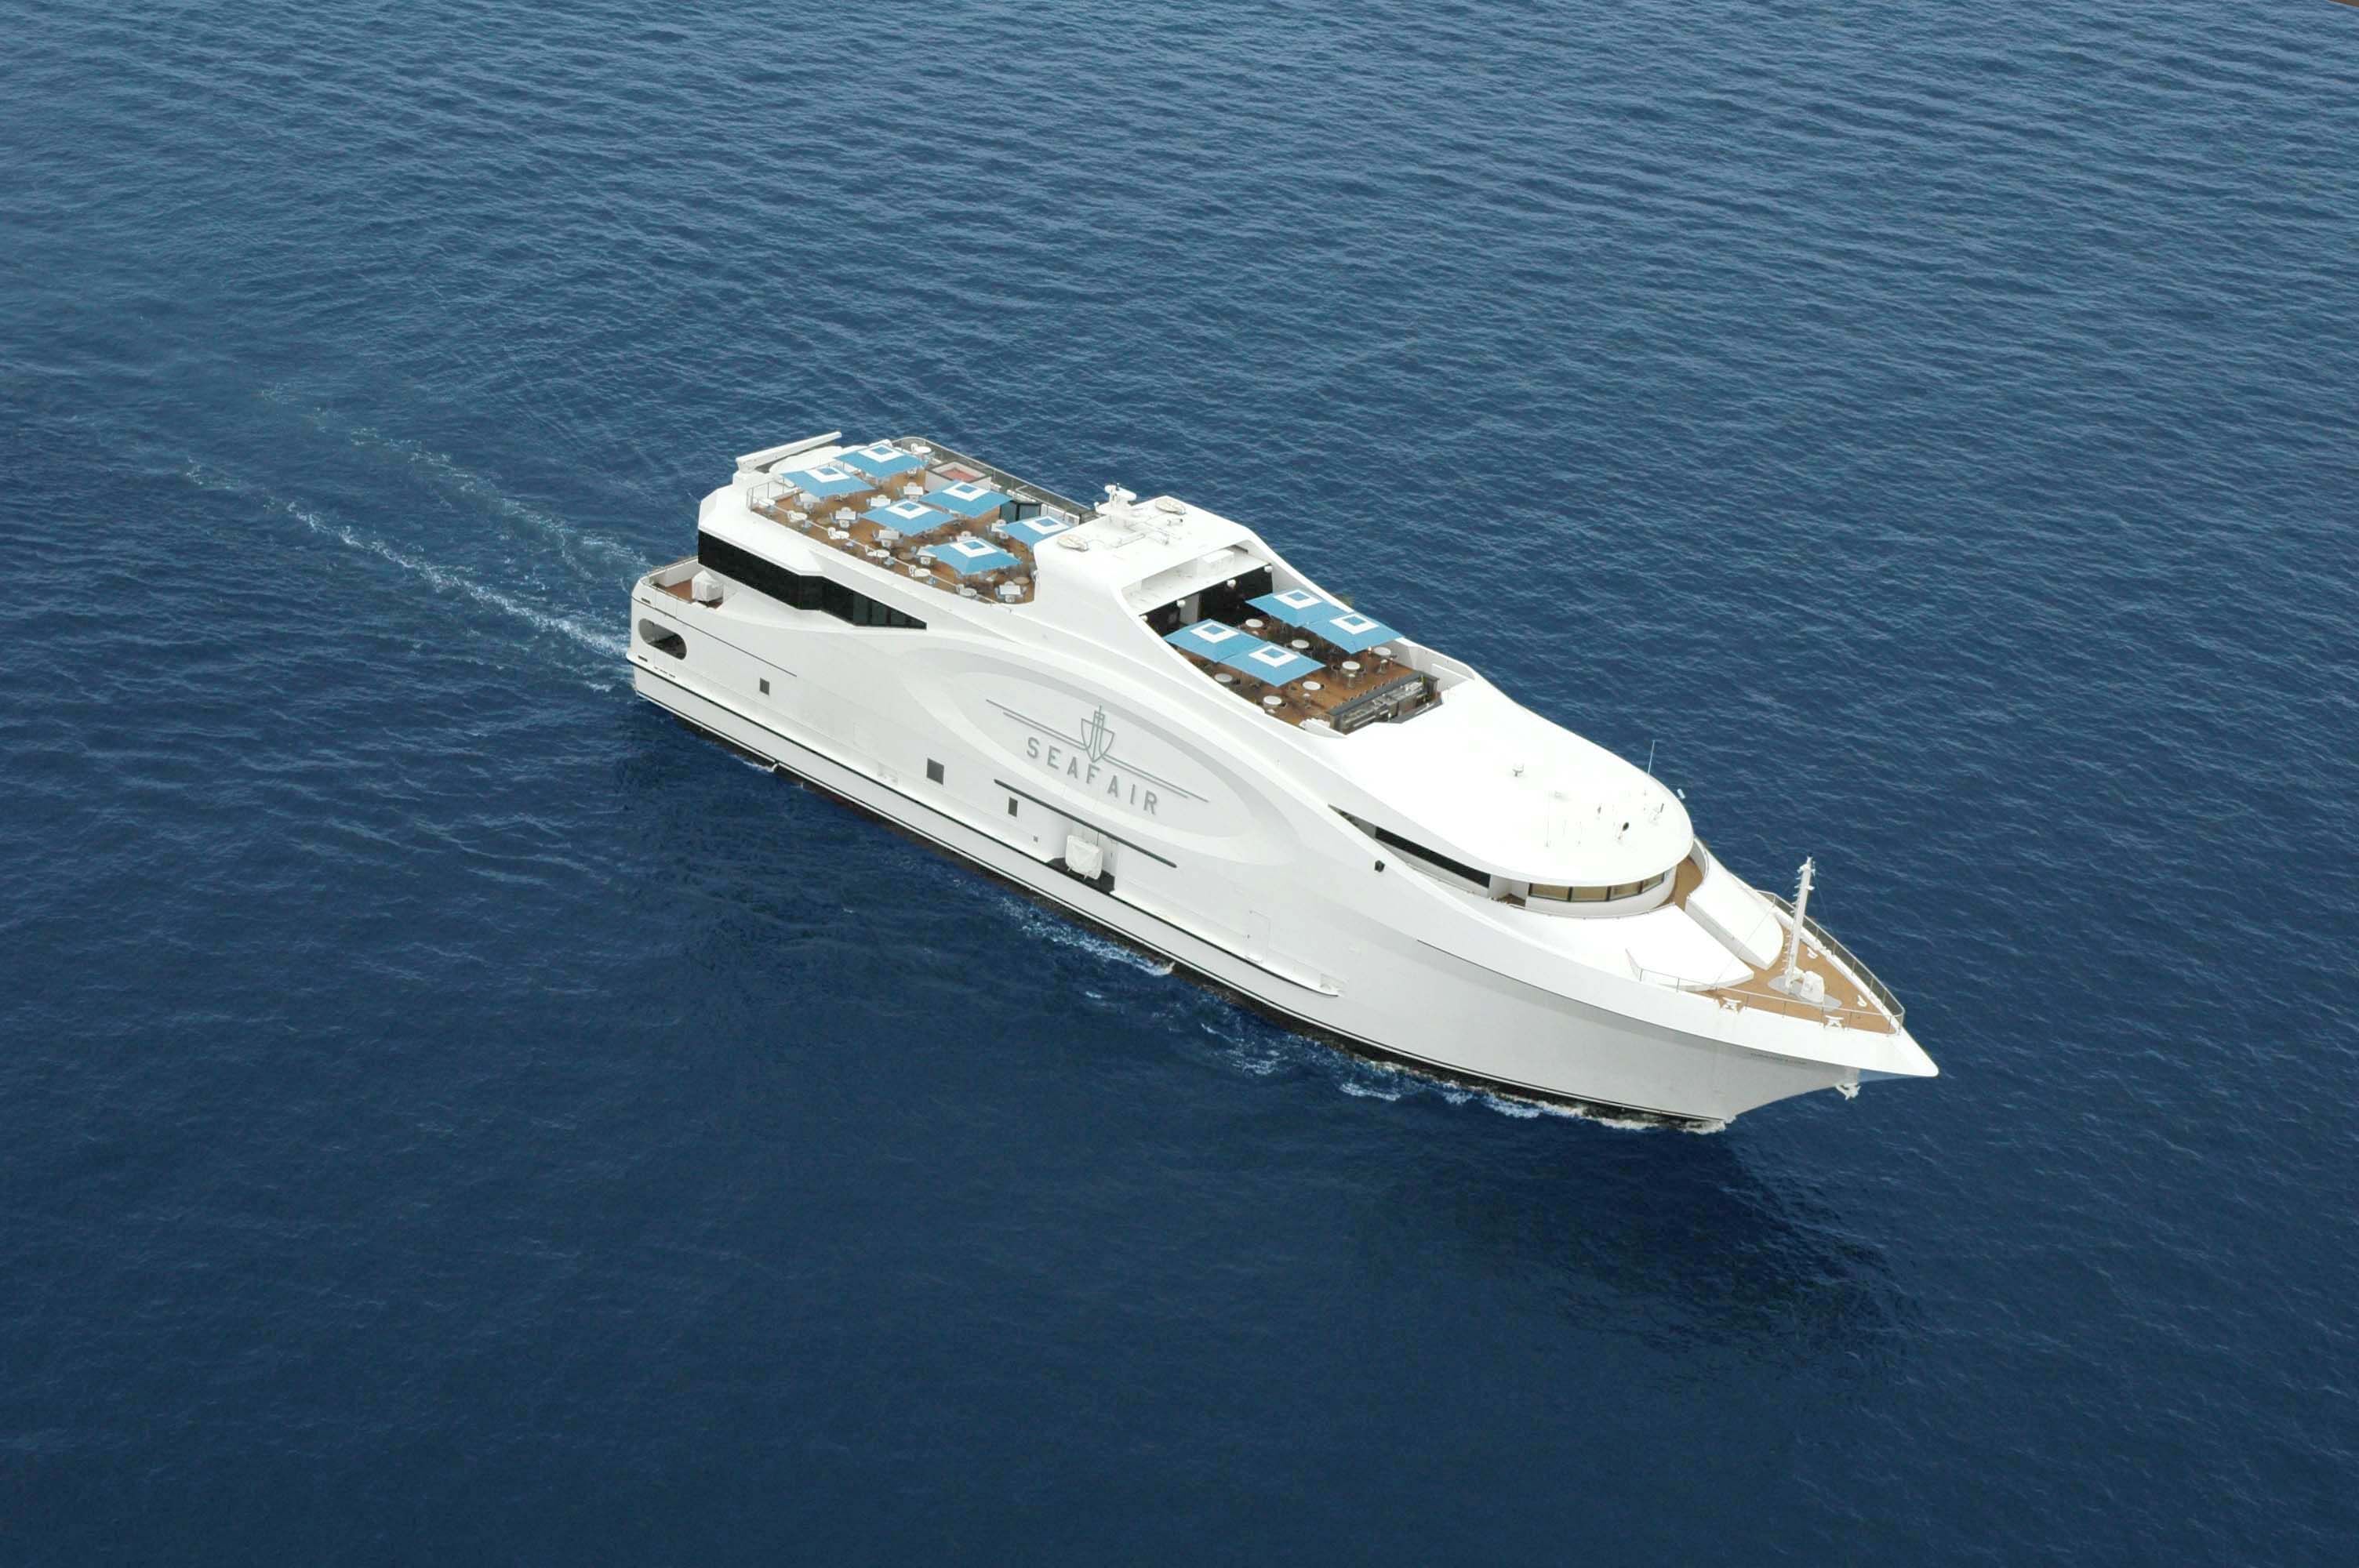 yacht seafair miami